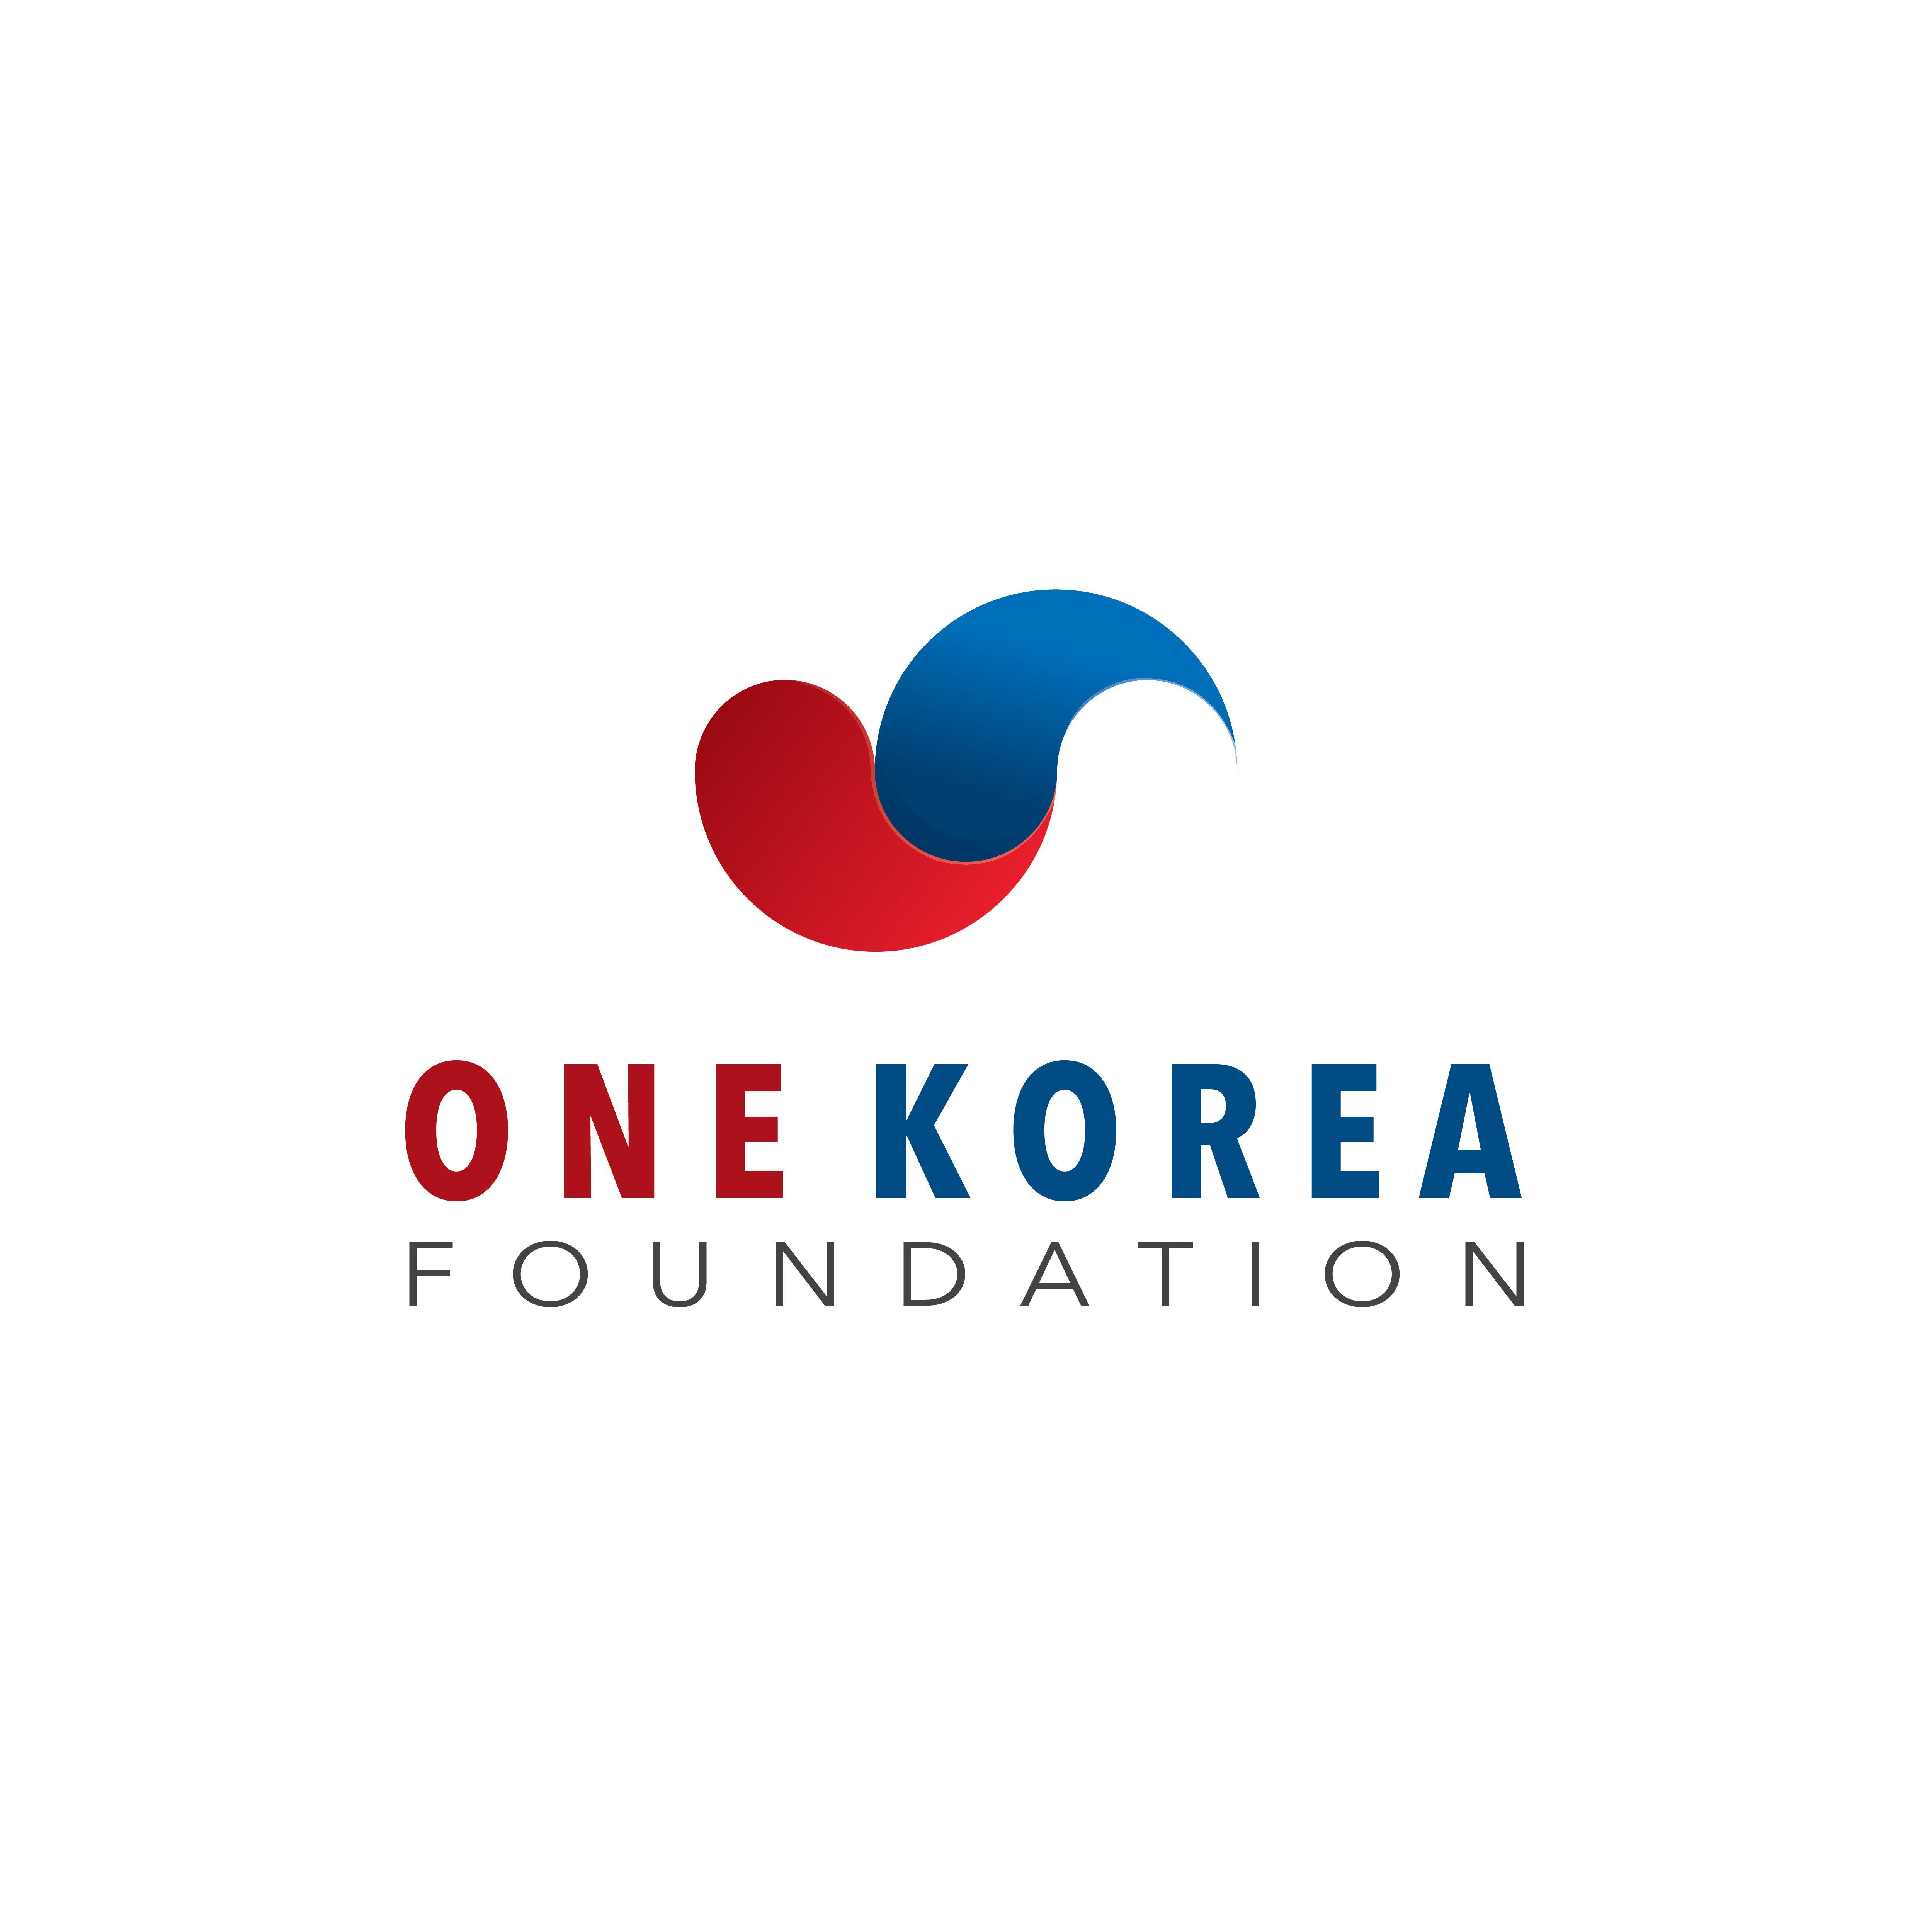 Korea Logo - Logo and Business Card Design. 'One Korea Foundation' design